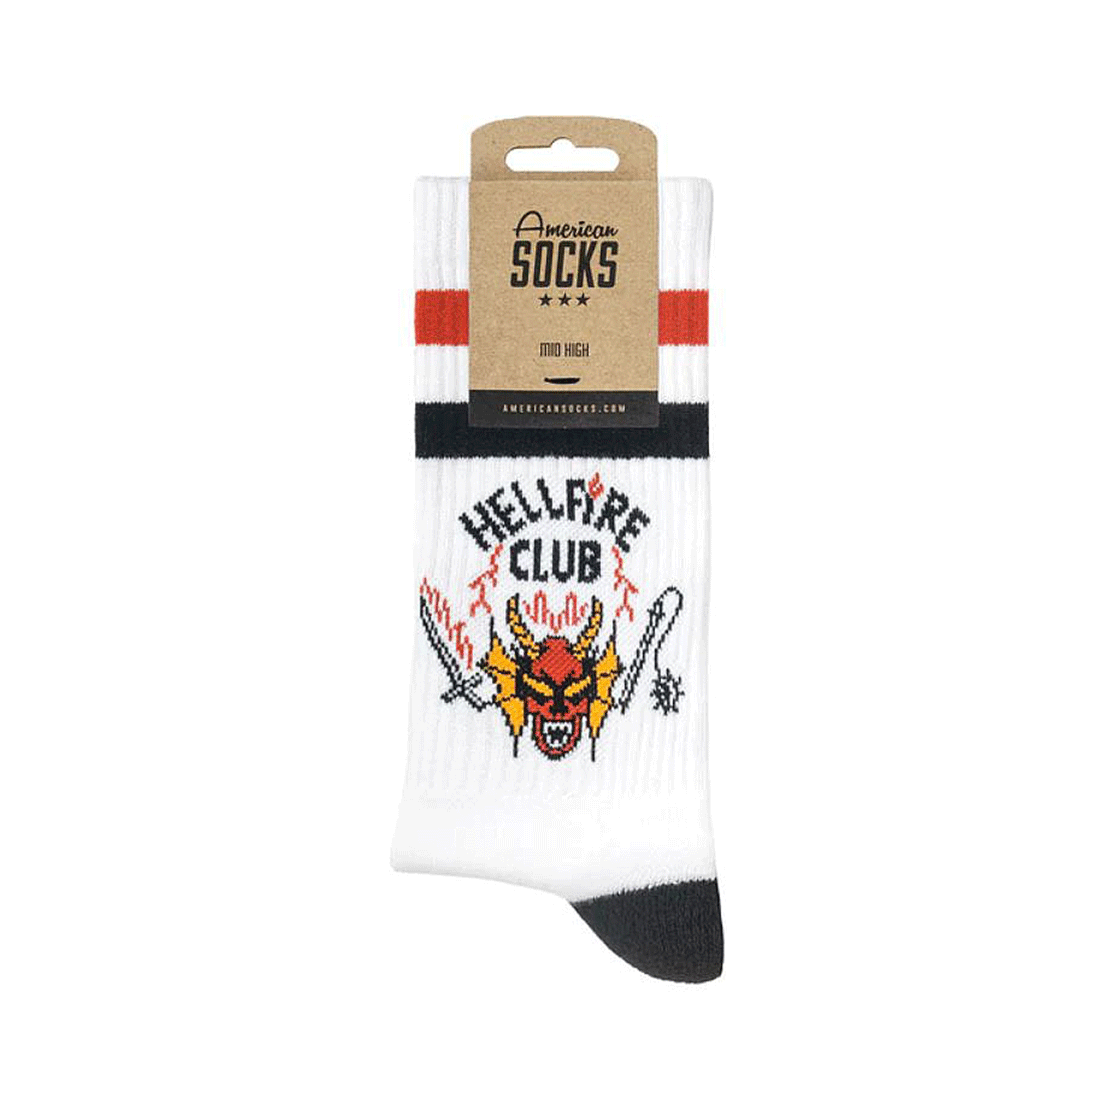 American Socks - Hellfire Club-White